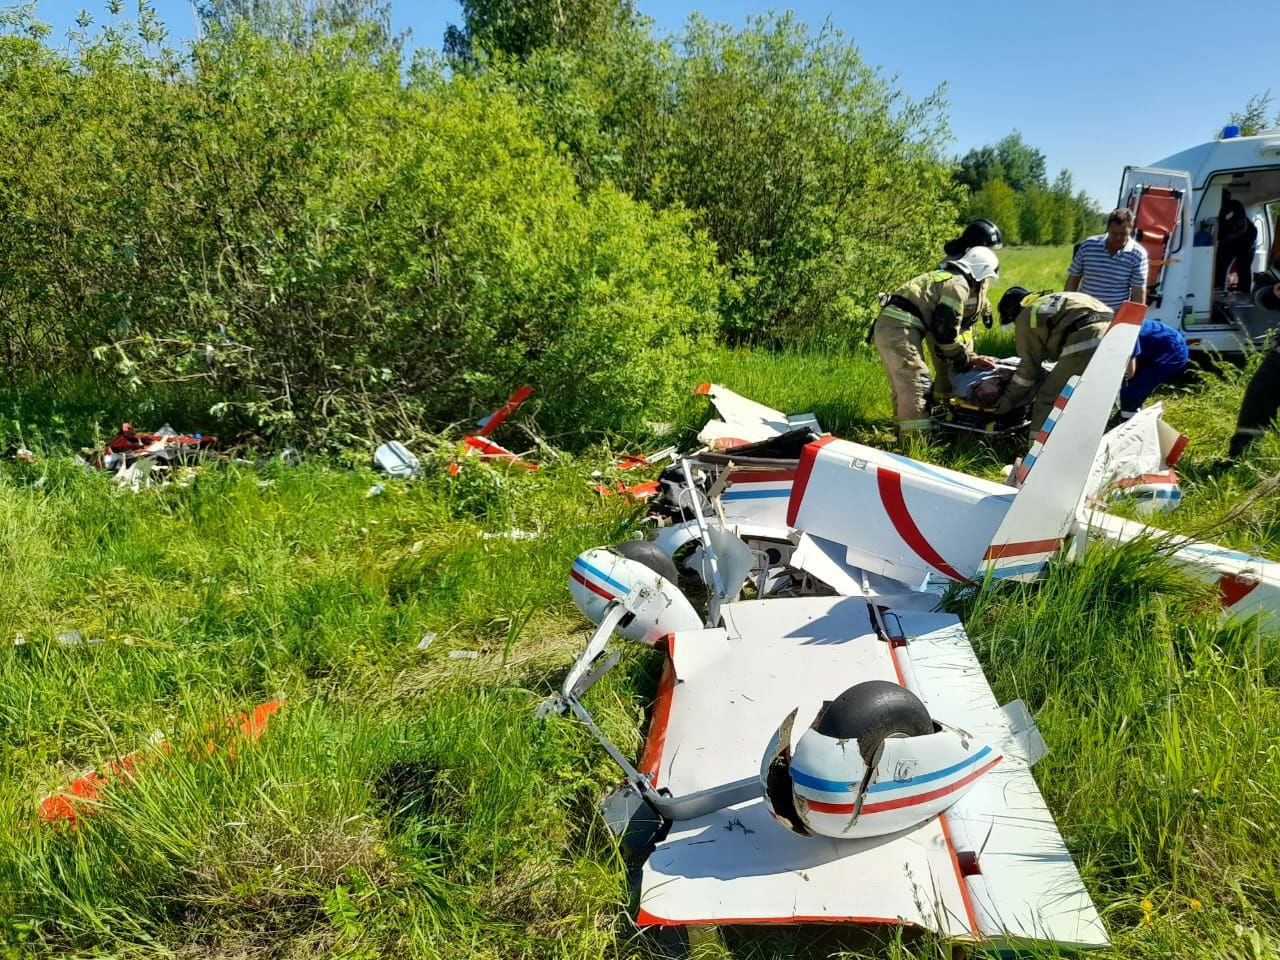 Самолет серьезно пострадал, его обломки разлетелись на десятки метров